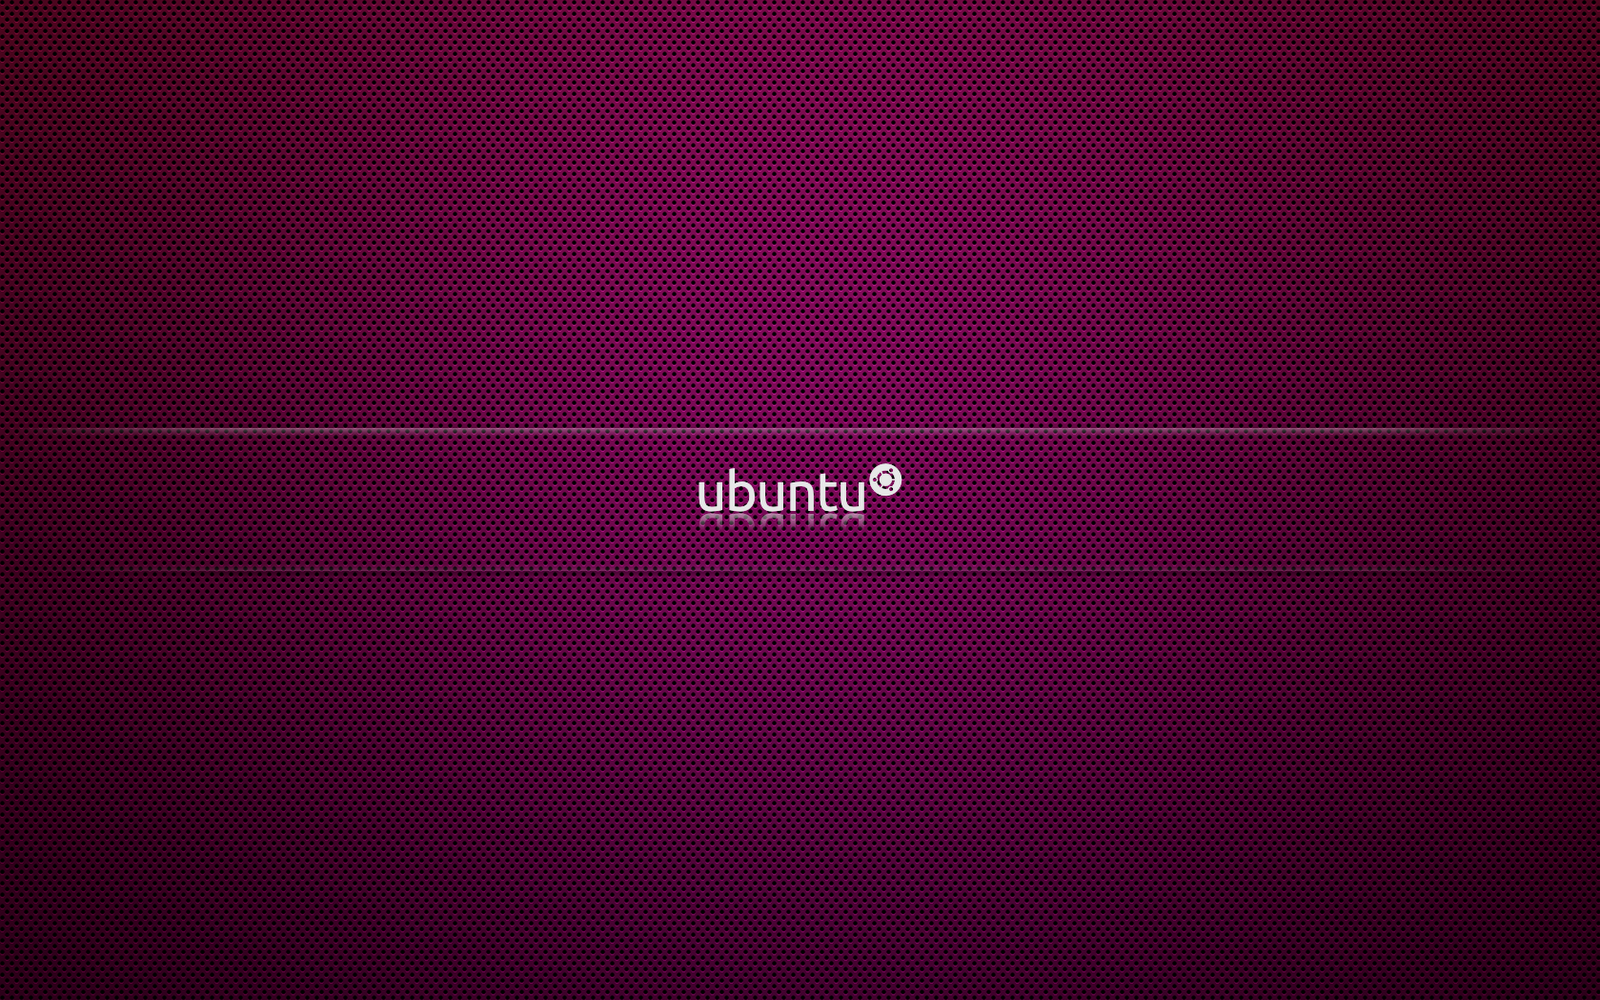 Latest Ubuntu images Wallpapers, New Ubuntu Wallpapers, hq ubuntu ...